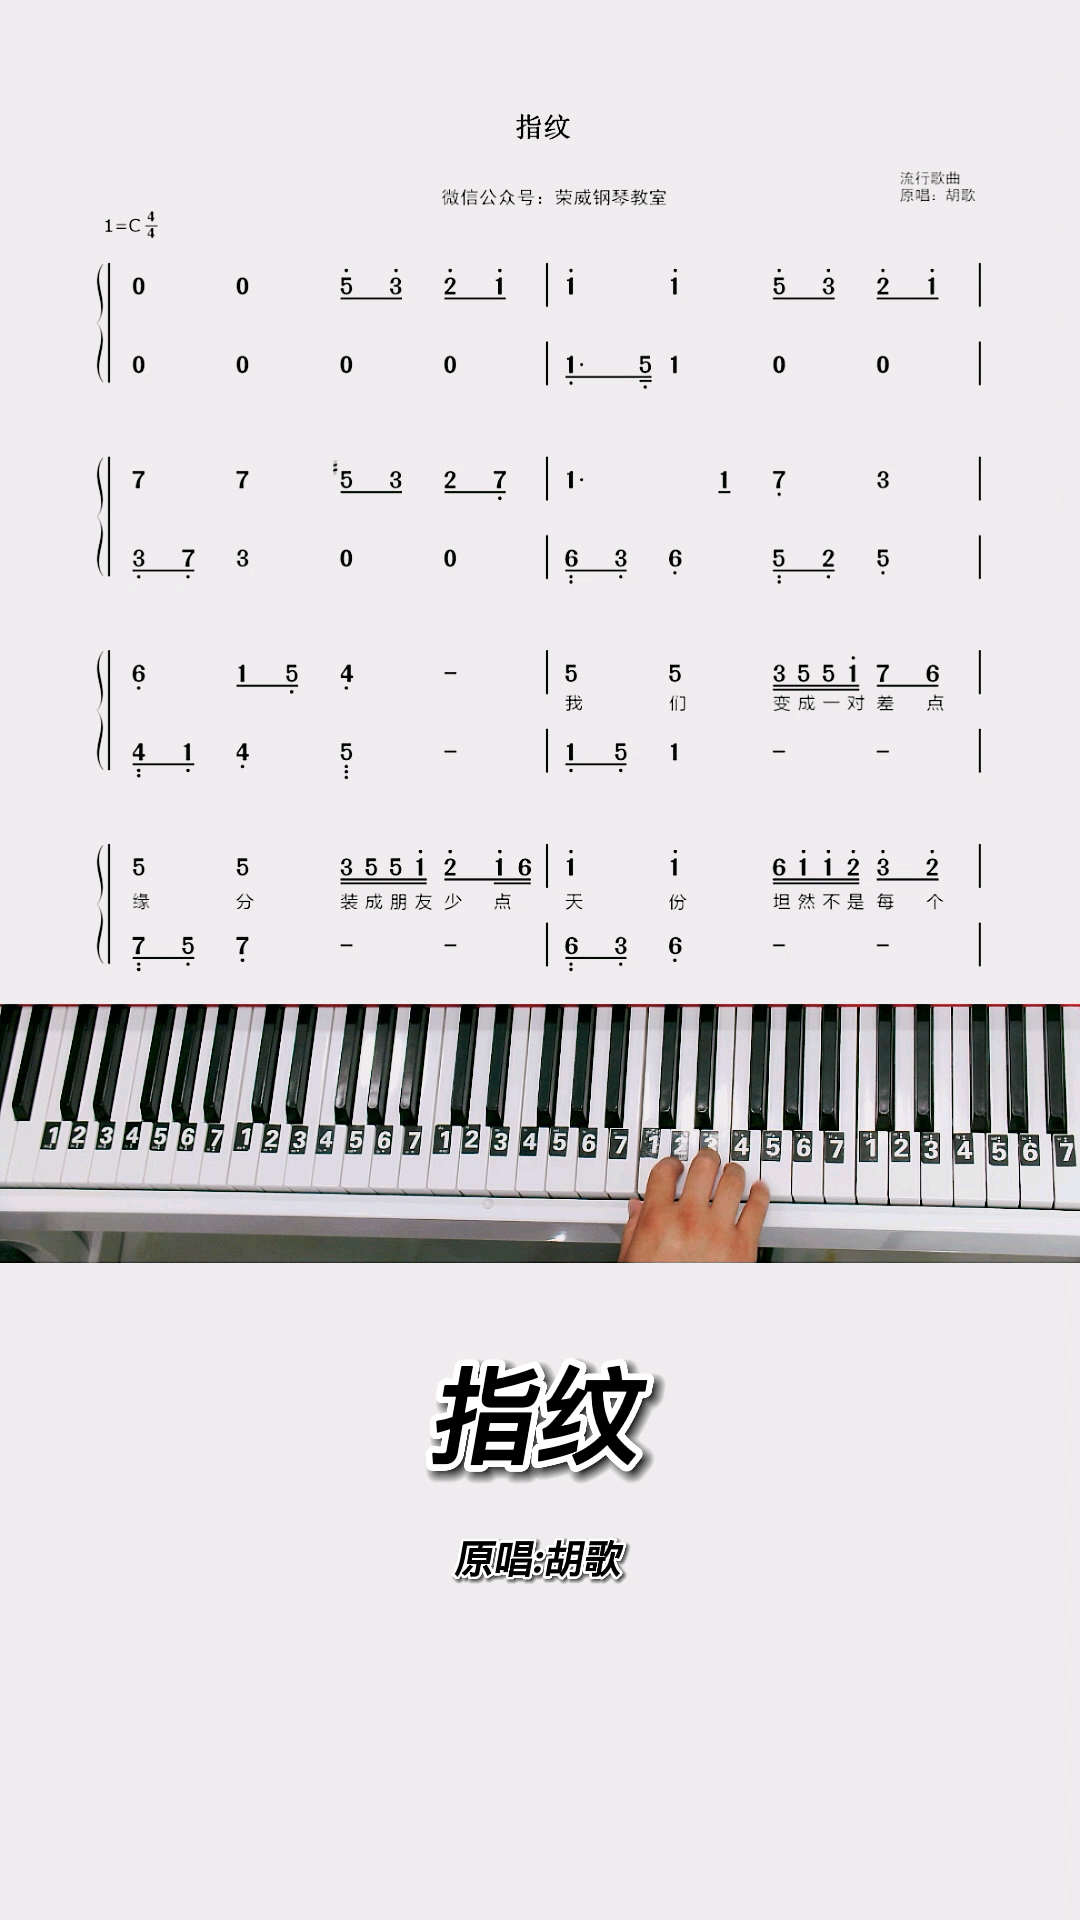 《指纹》钢琴教学零基础版双手钢琴简谱教程!